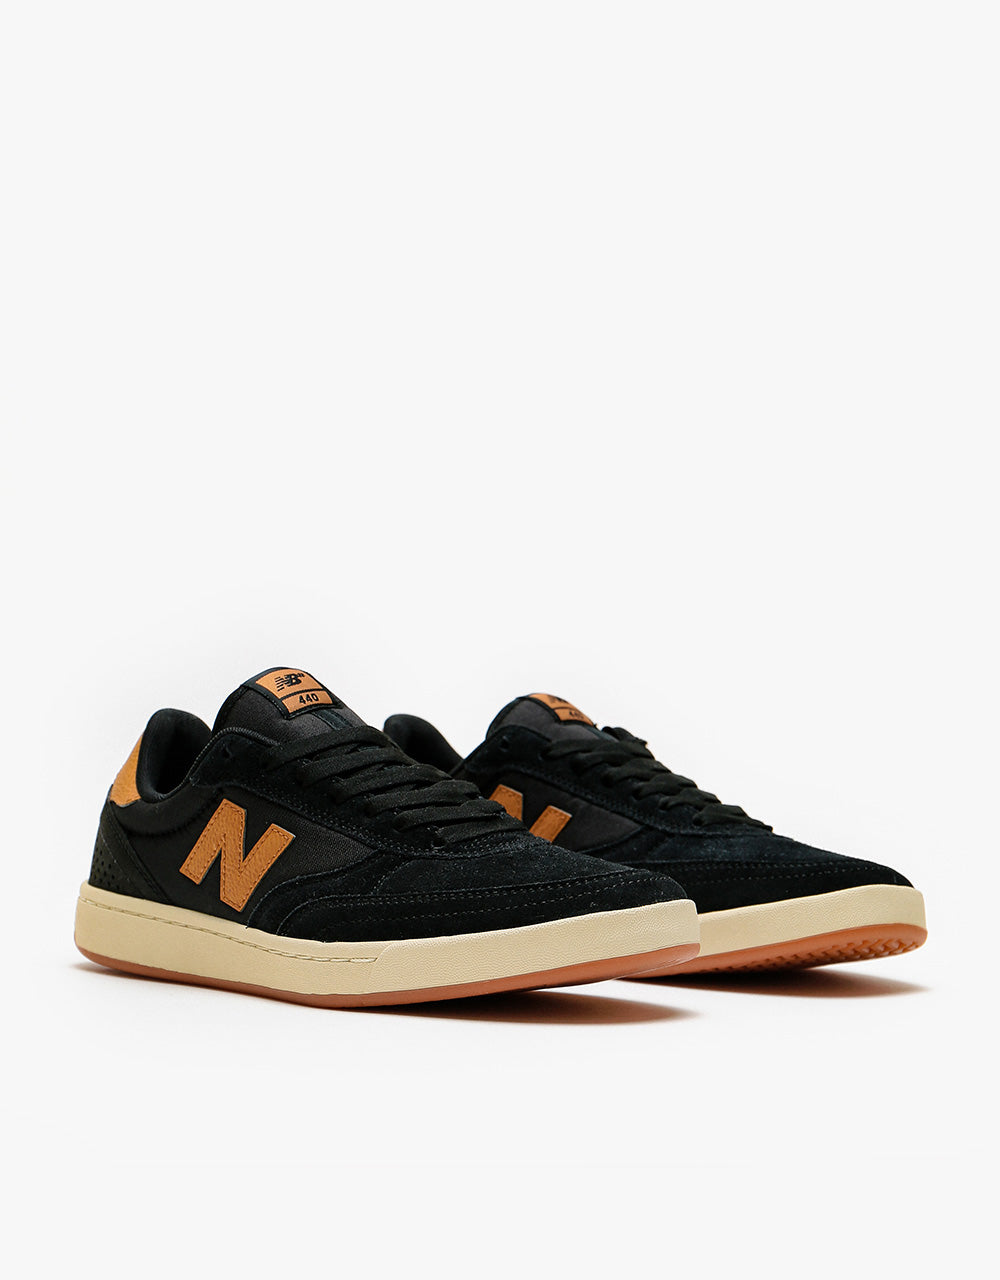 New Balance Numeric 440 Skate Shoes - Black/Tan